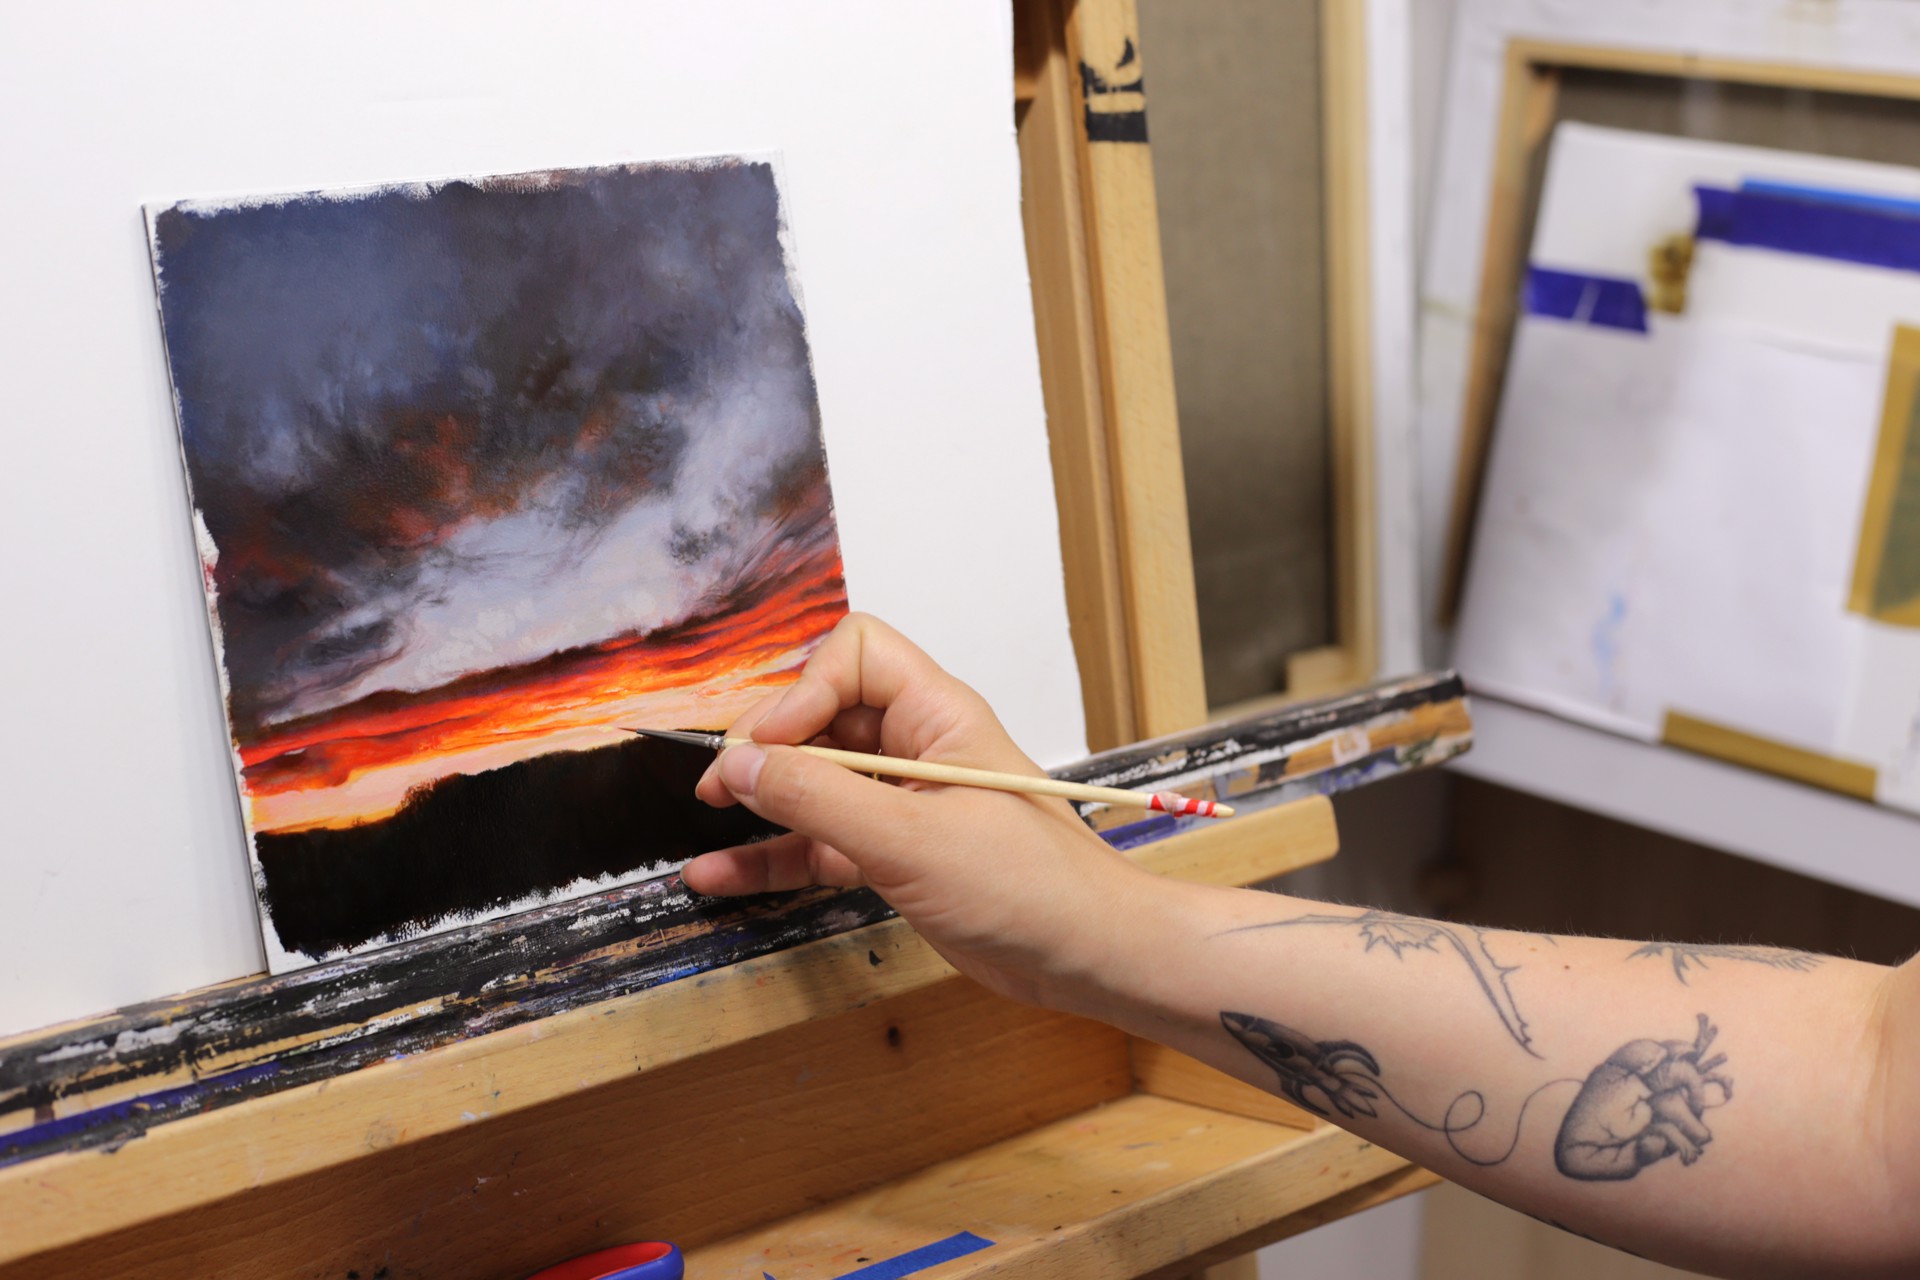 A Burning Cloud by Anna Wypych